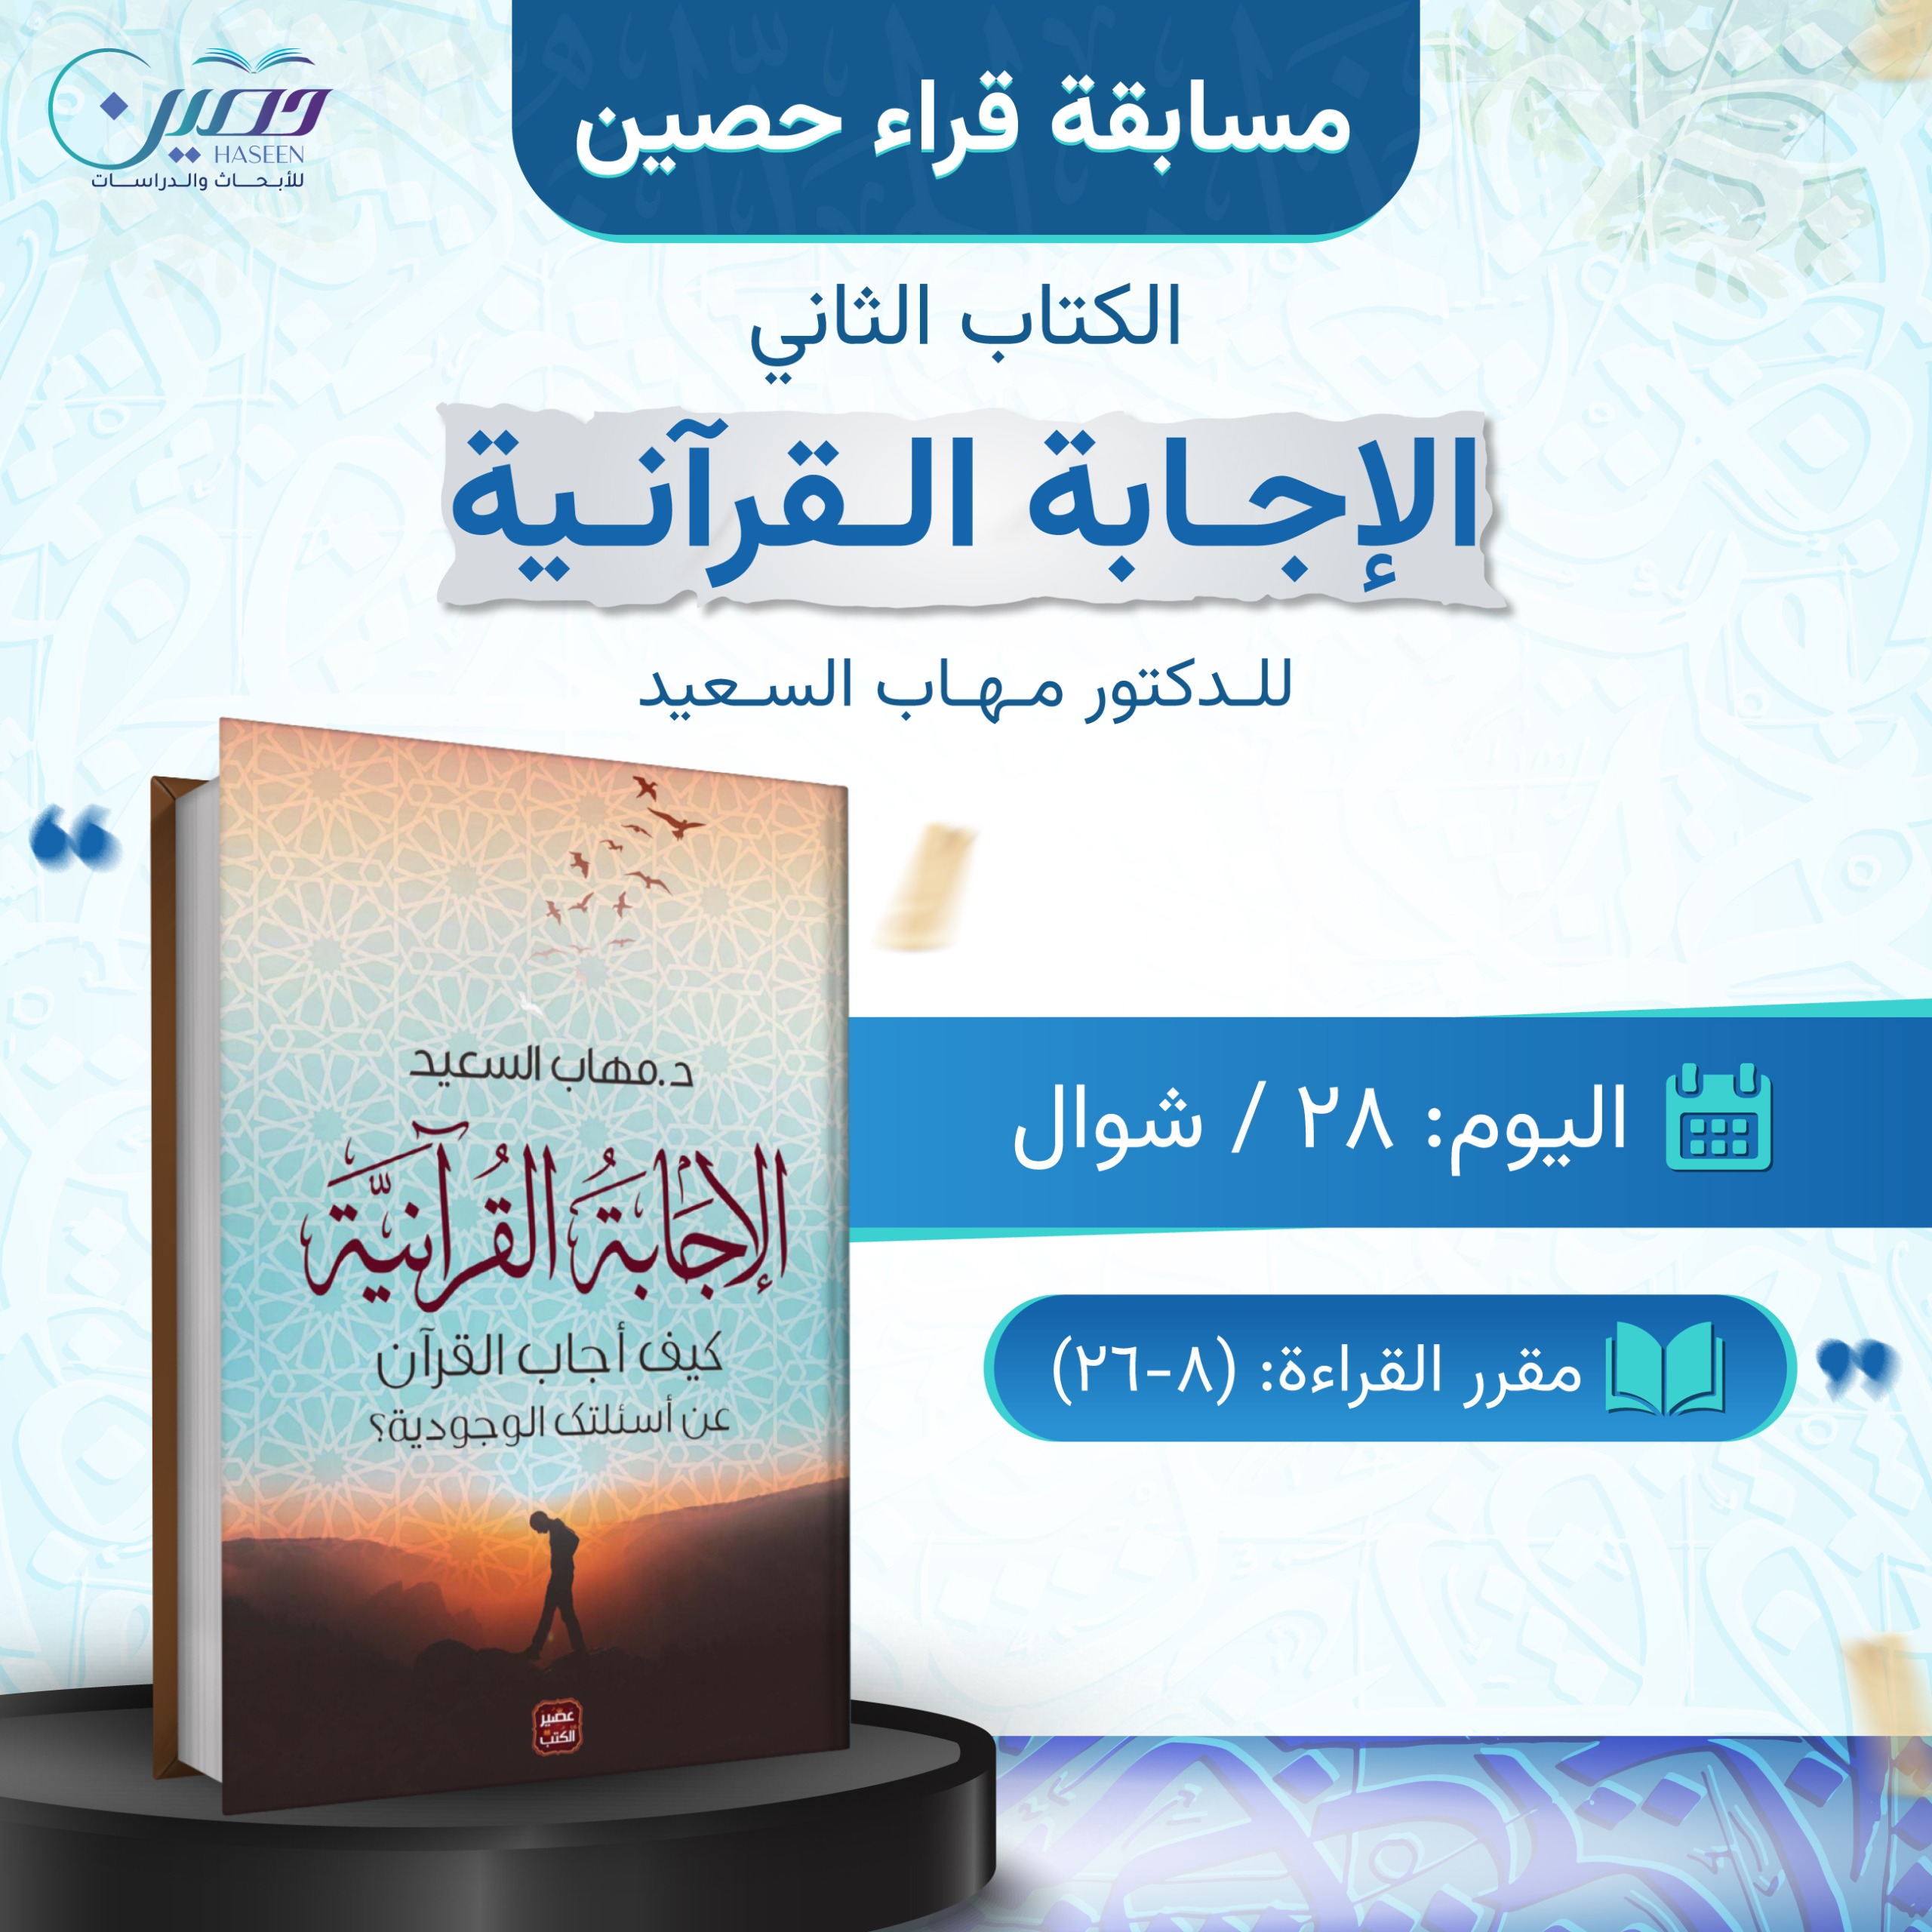 مسابقة "قراء حصين".. كتاب "الإجابة القرآنية"  للدكتور مهاب السعيد